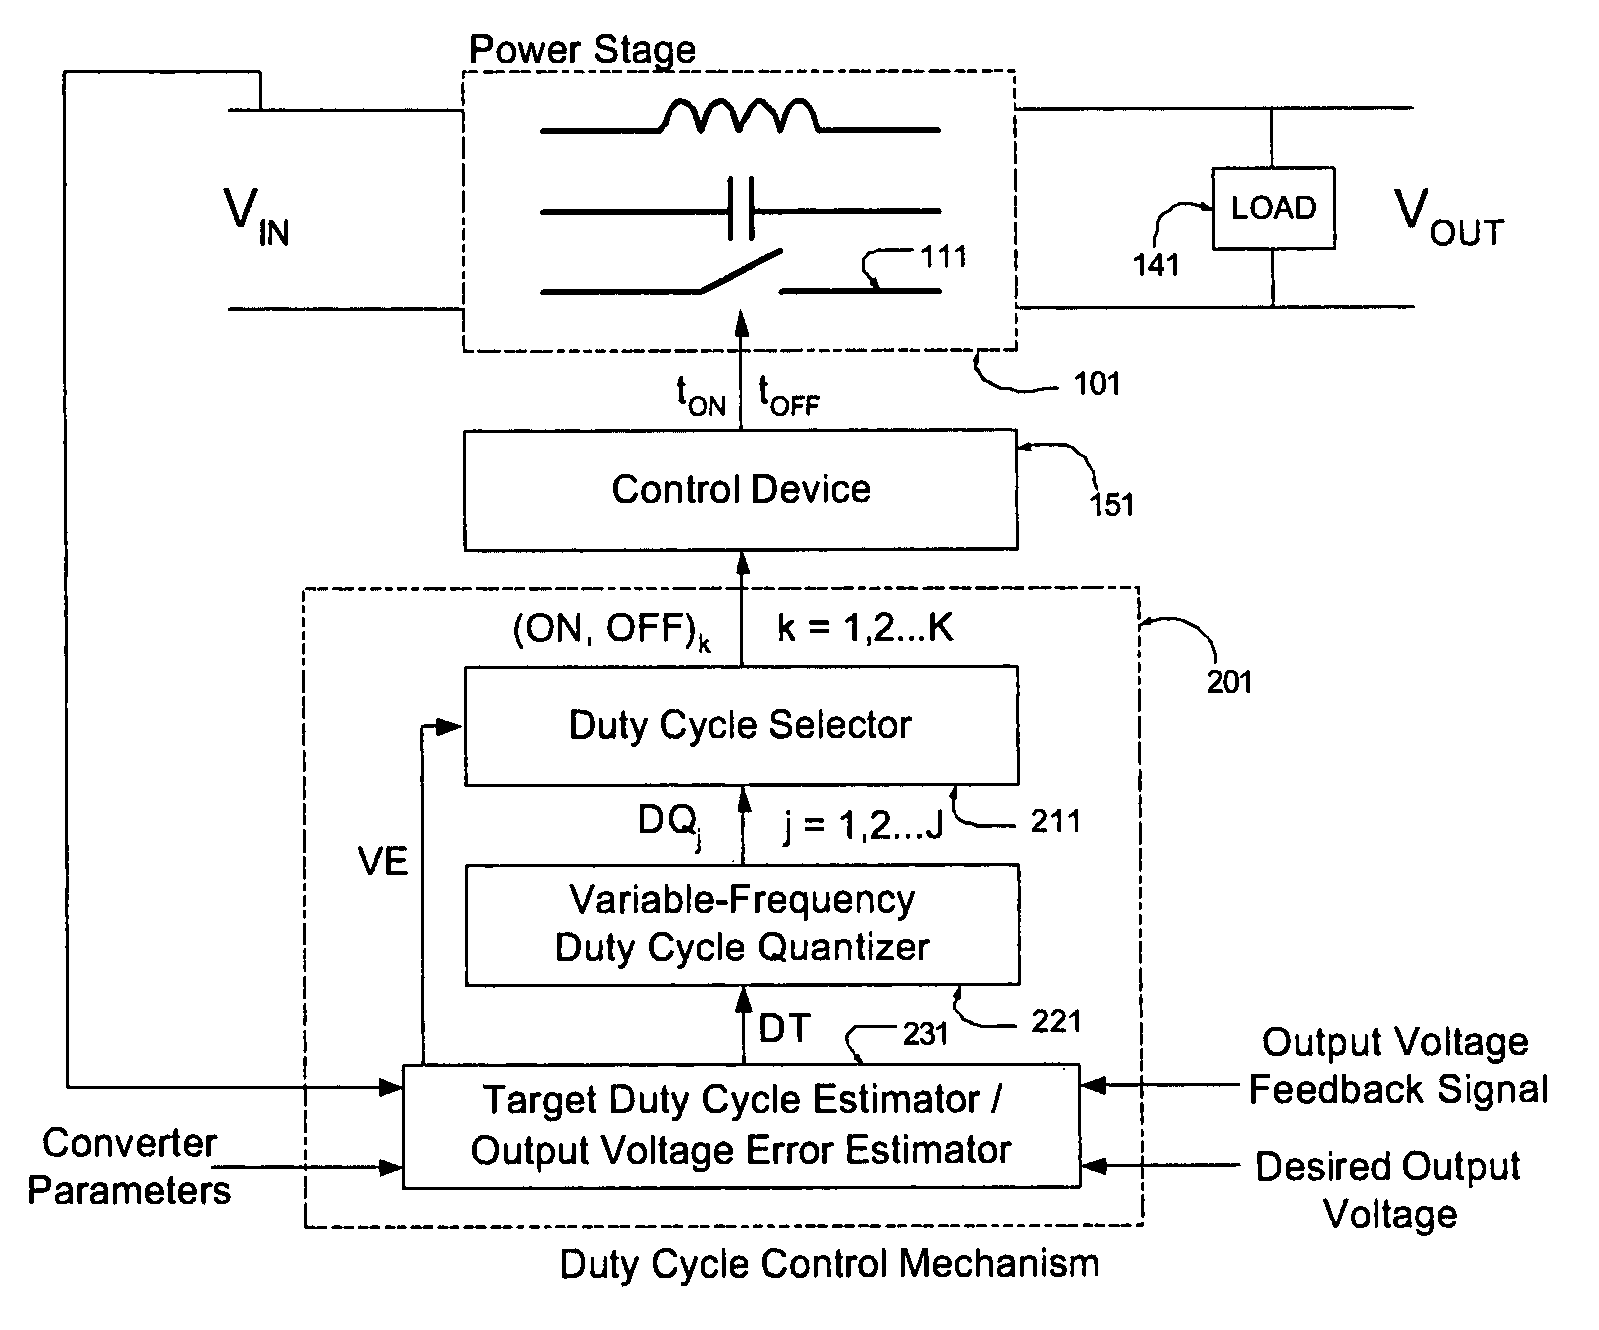 Digital voltage regulator for DC/DC converters